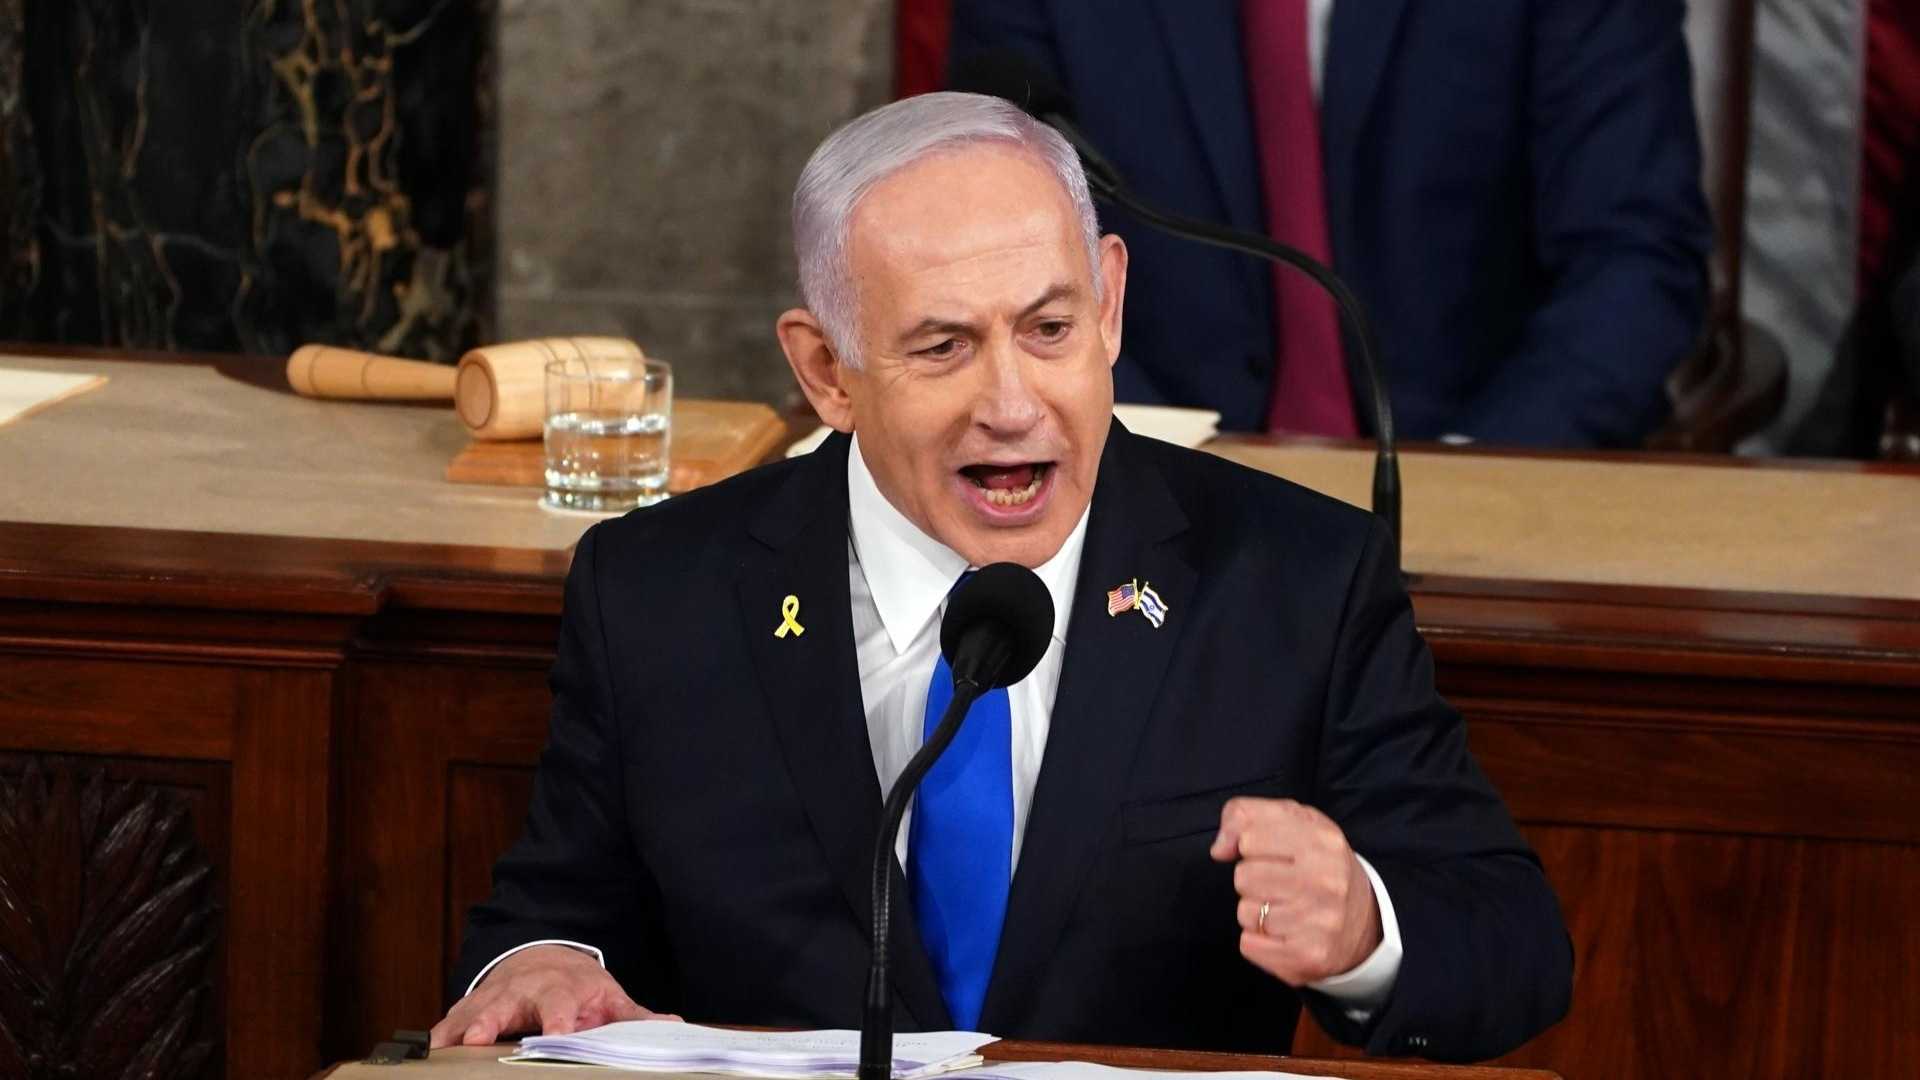 Benjamín Netanyahu ofreció un discurso ante el Congreso de Estados Unidos